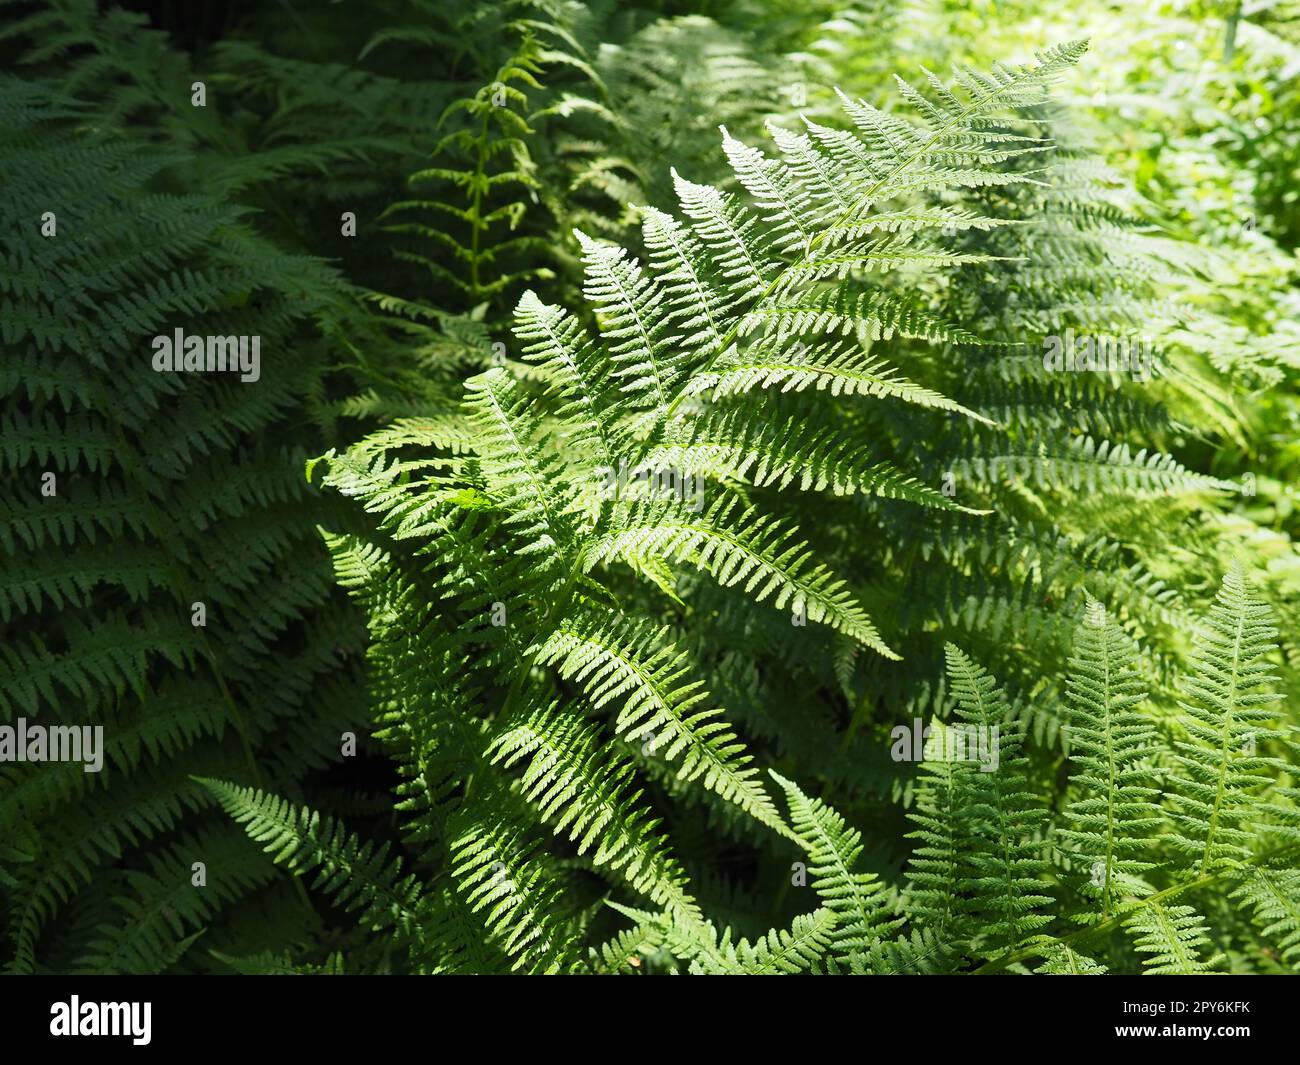 Farnpflanze im Wald. Wunderschöne anmutige grüne Blätter. Polypodiphyta, eine Abteilung für Gefäßpflanzen, die moderne Farne und alte höhere Pflanzen umfasst Stockfoto